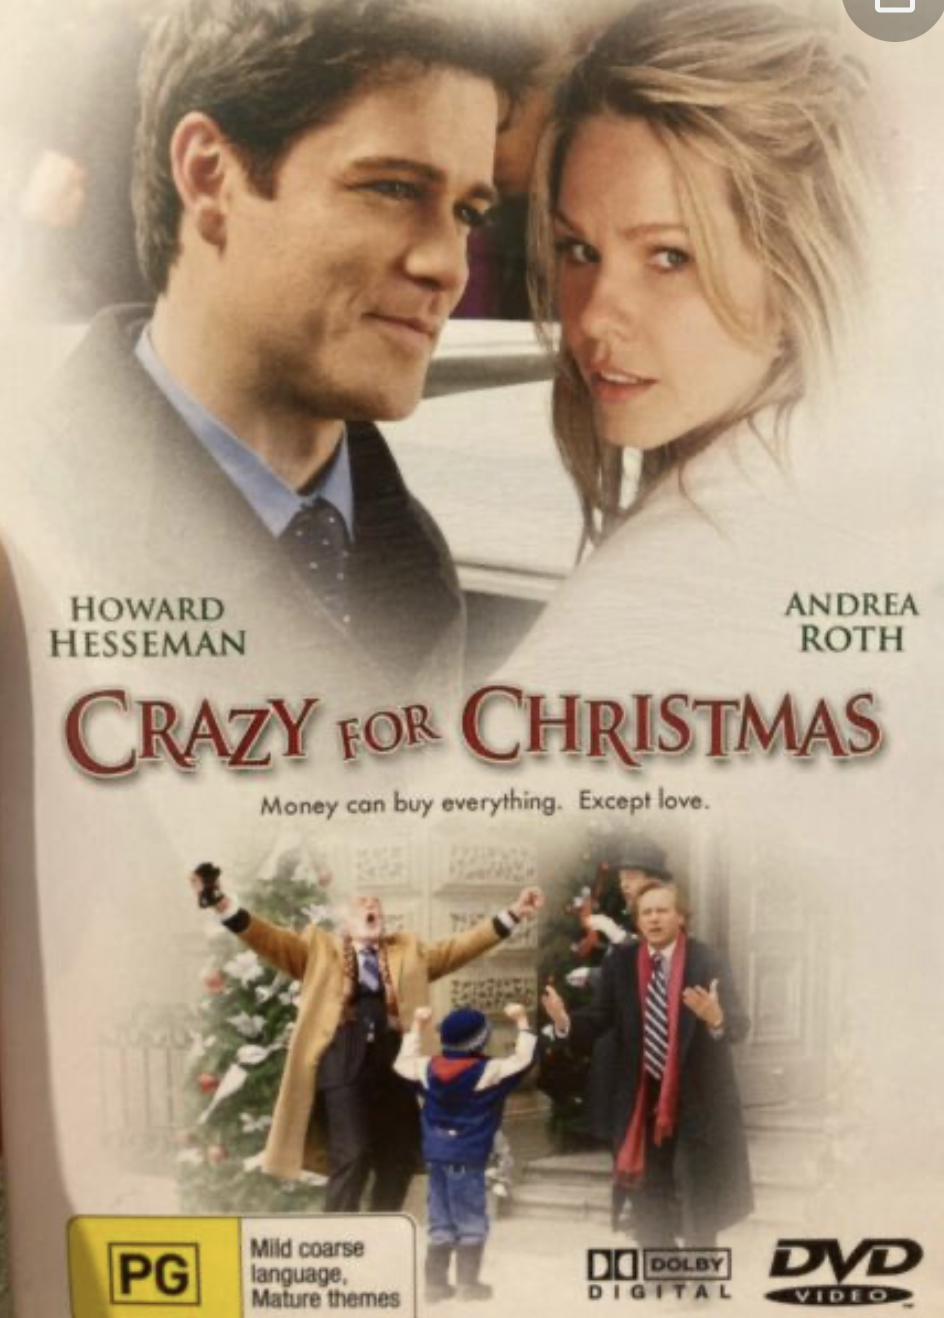 Crazy for Christmas (2005) Screenshot 3